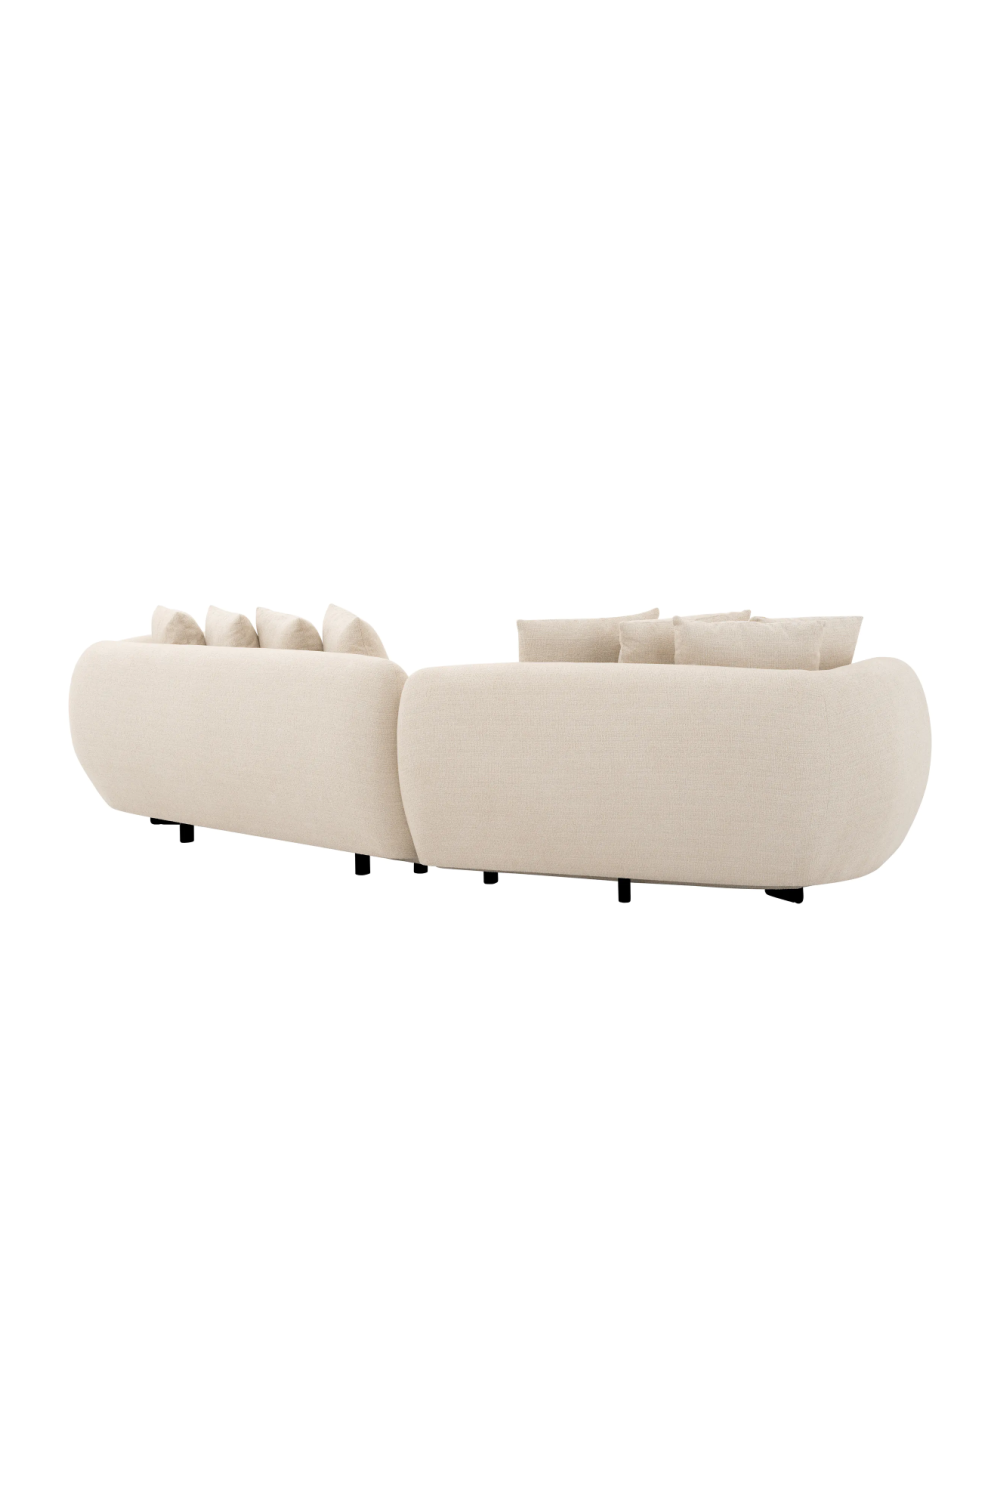 Beige Modern Sofa With Cushions | Eichholtz Sidney | Oroa.com